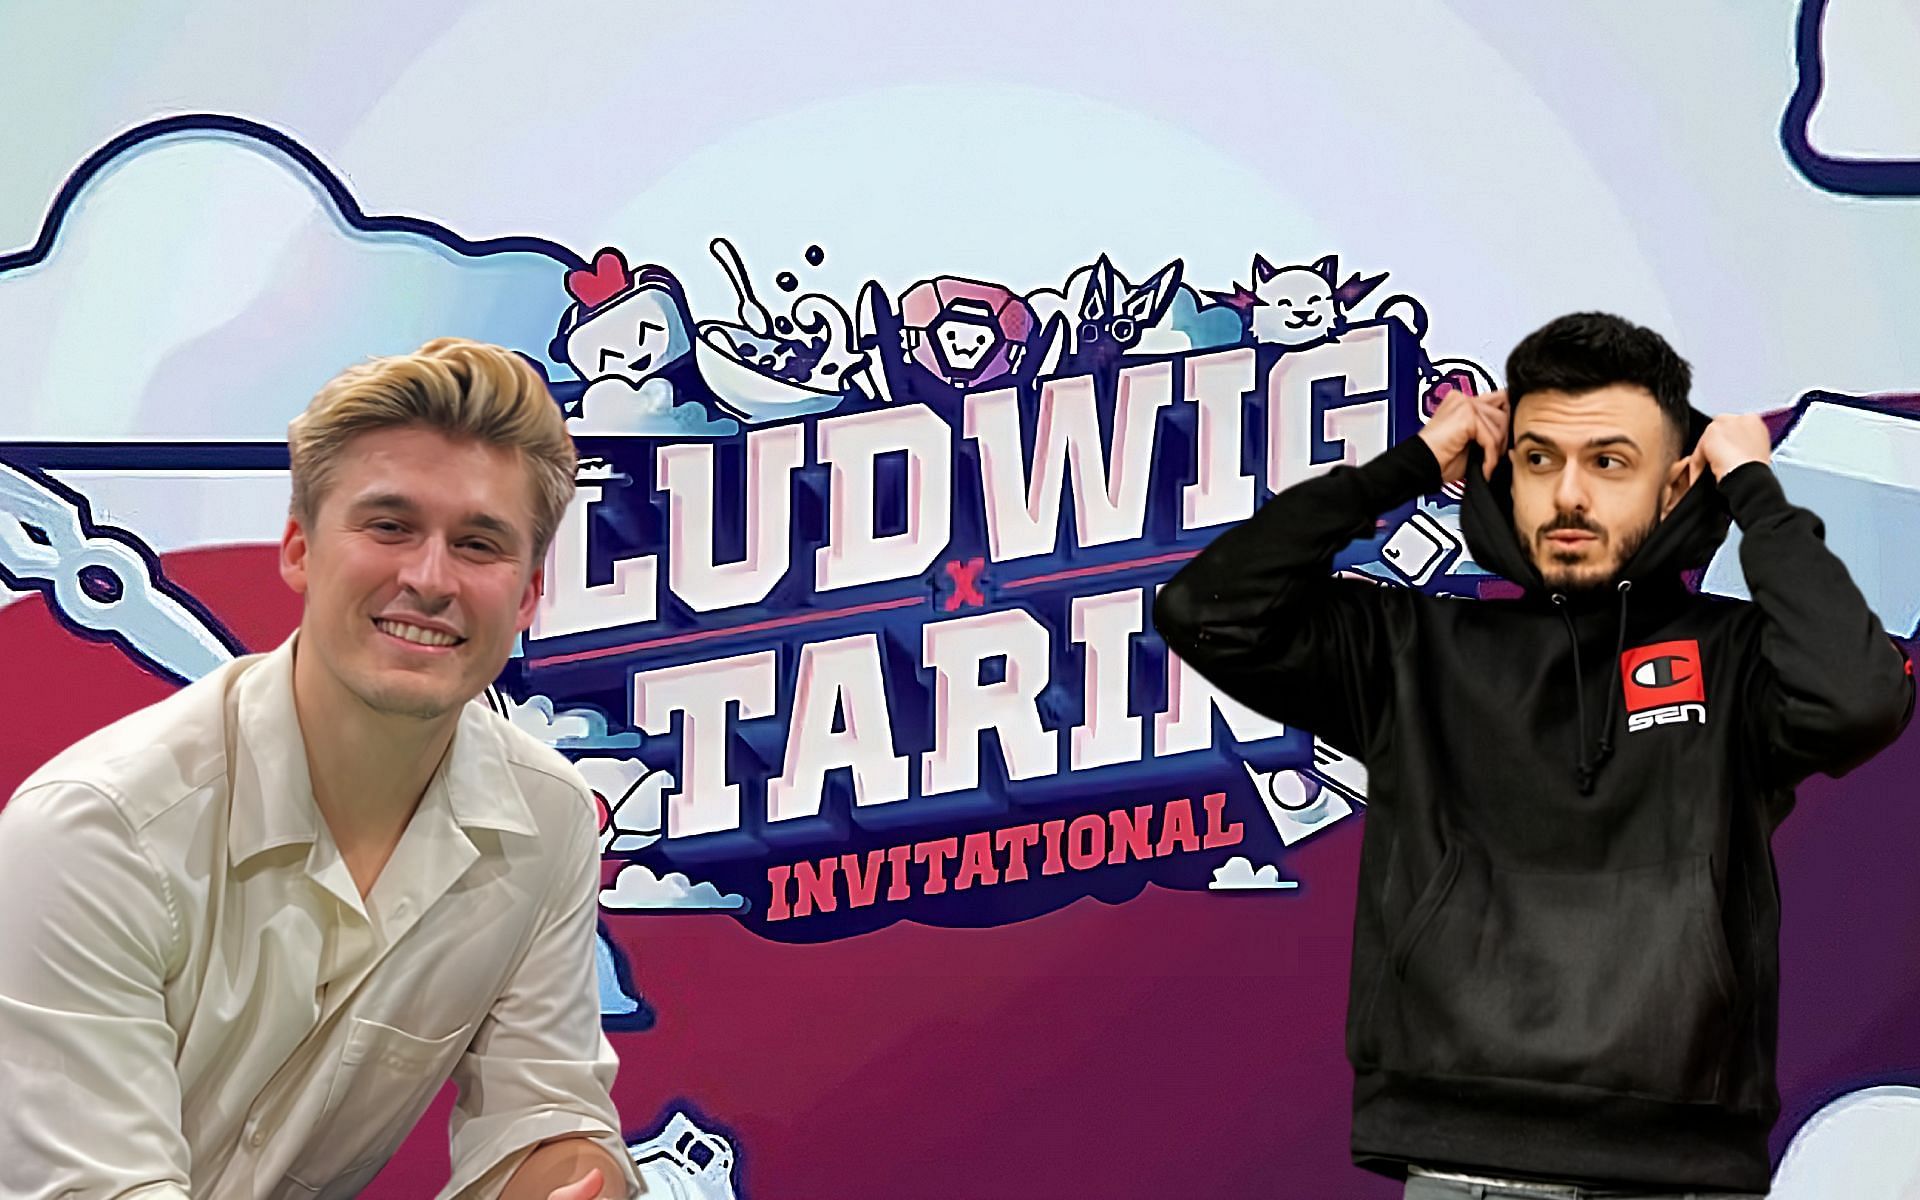 Ludwig x Tarik Valorant Invitational tournament details (Image via Sportskeeda)